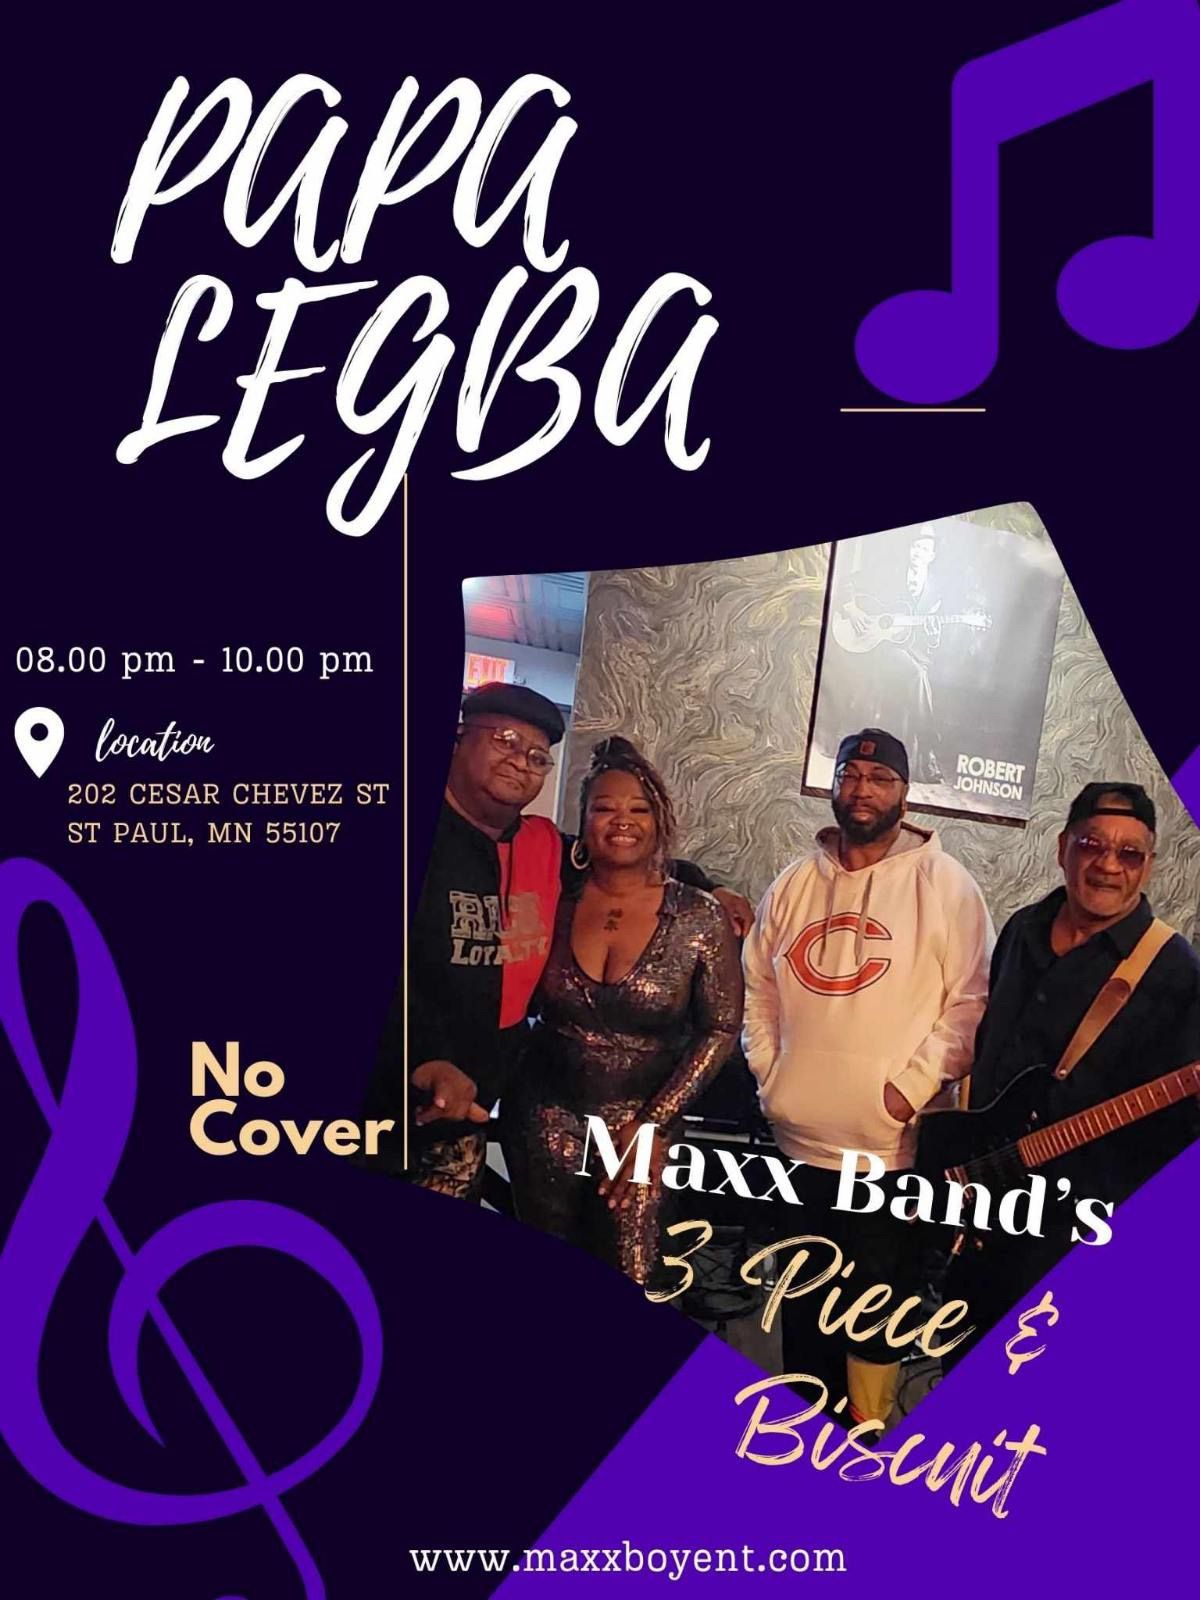 Maxx Band Performing Live at Papa Legba's Lounge!